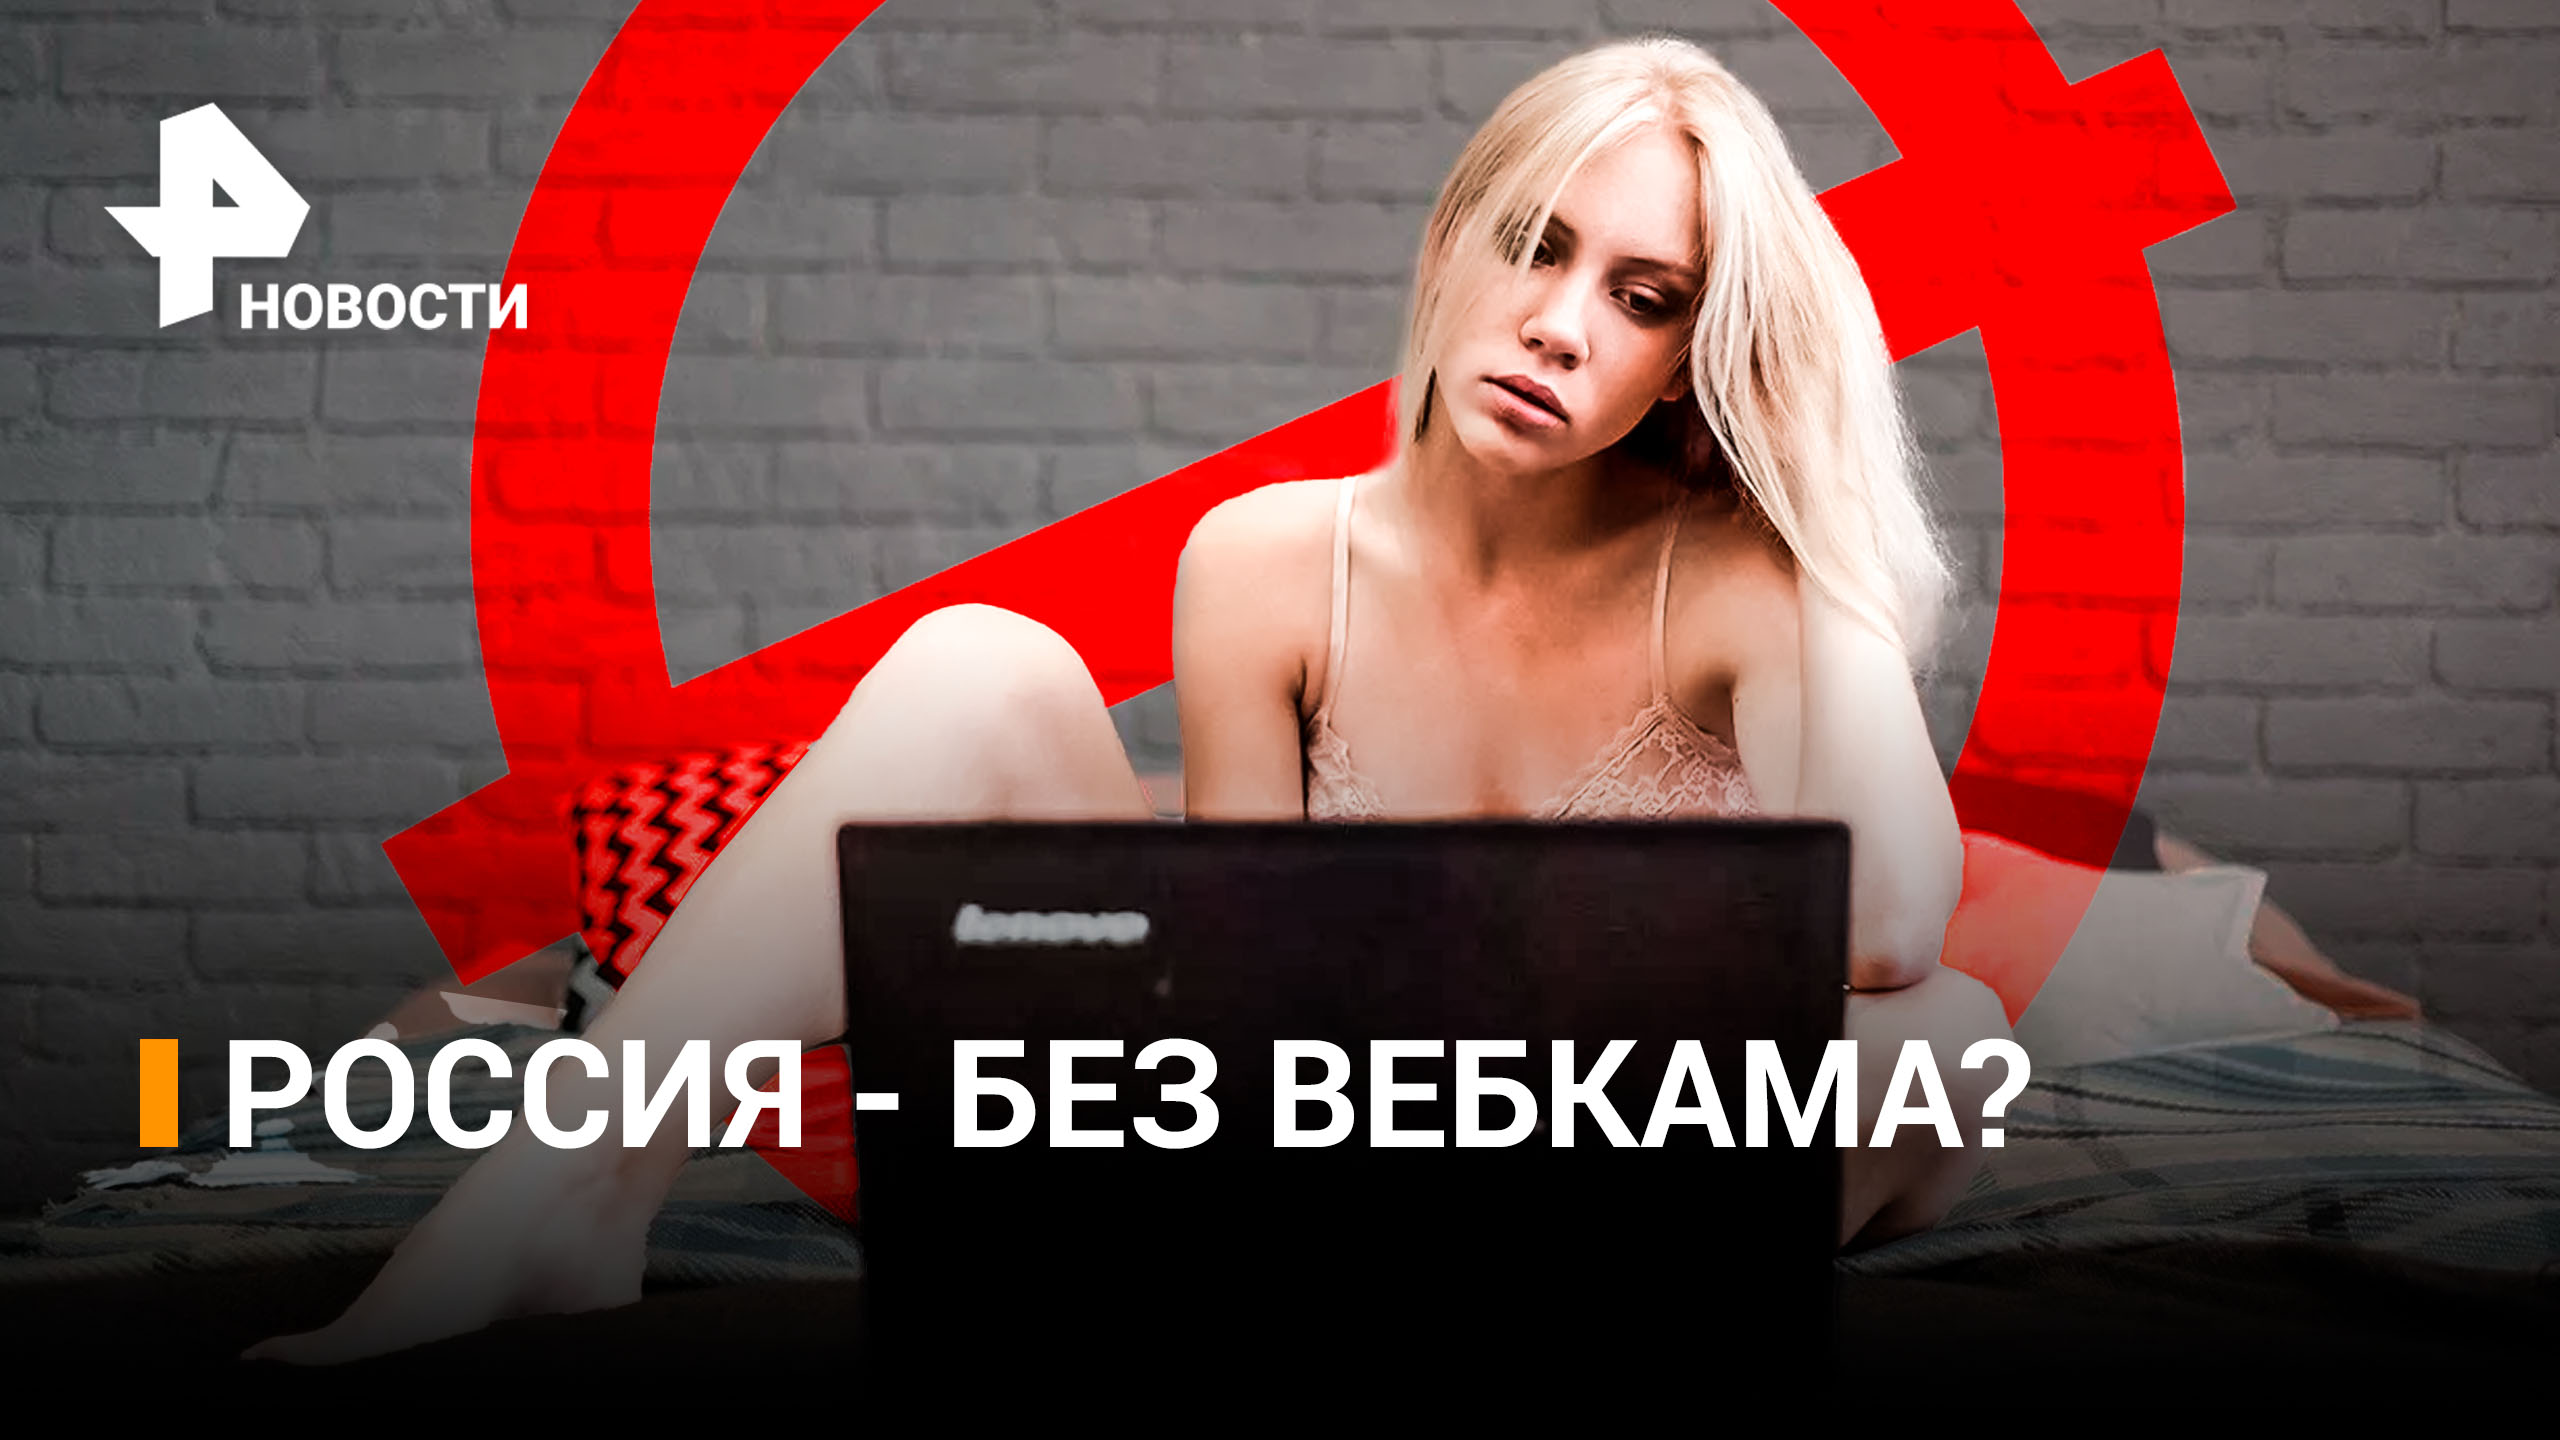 Вебкам-модели могут попасть под запрет в России / РЕН Новости